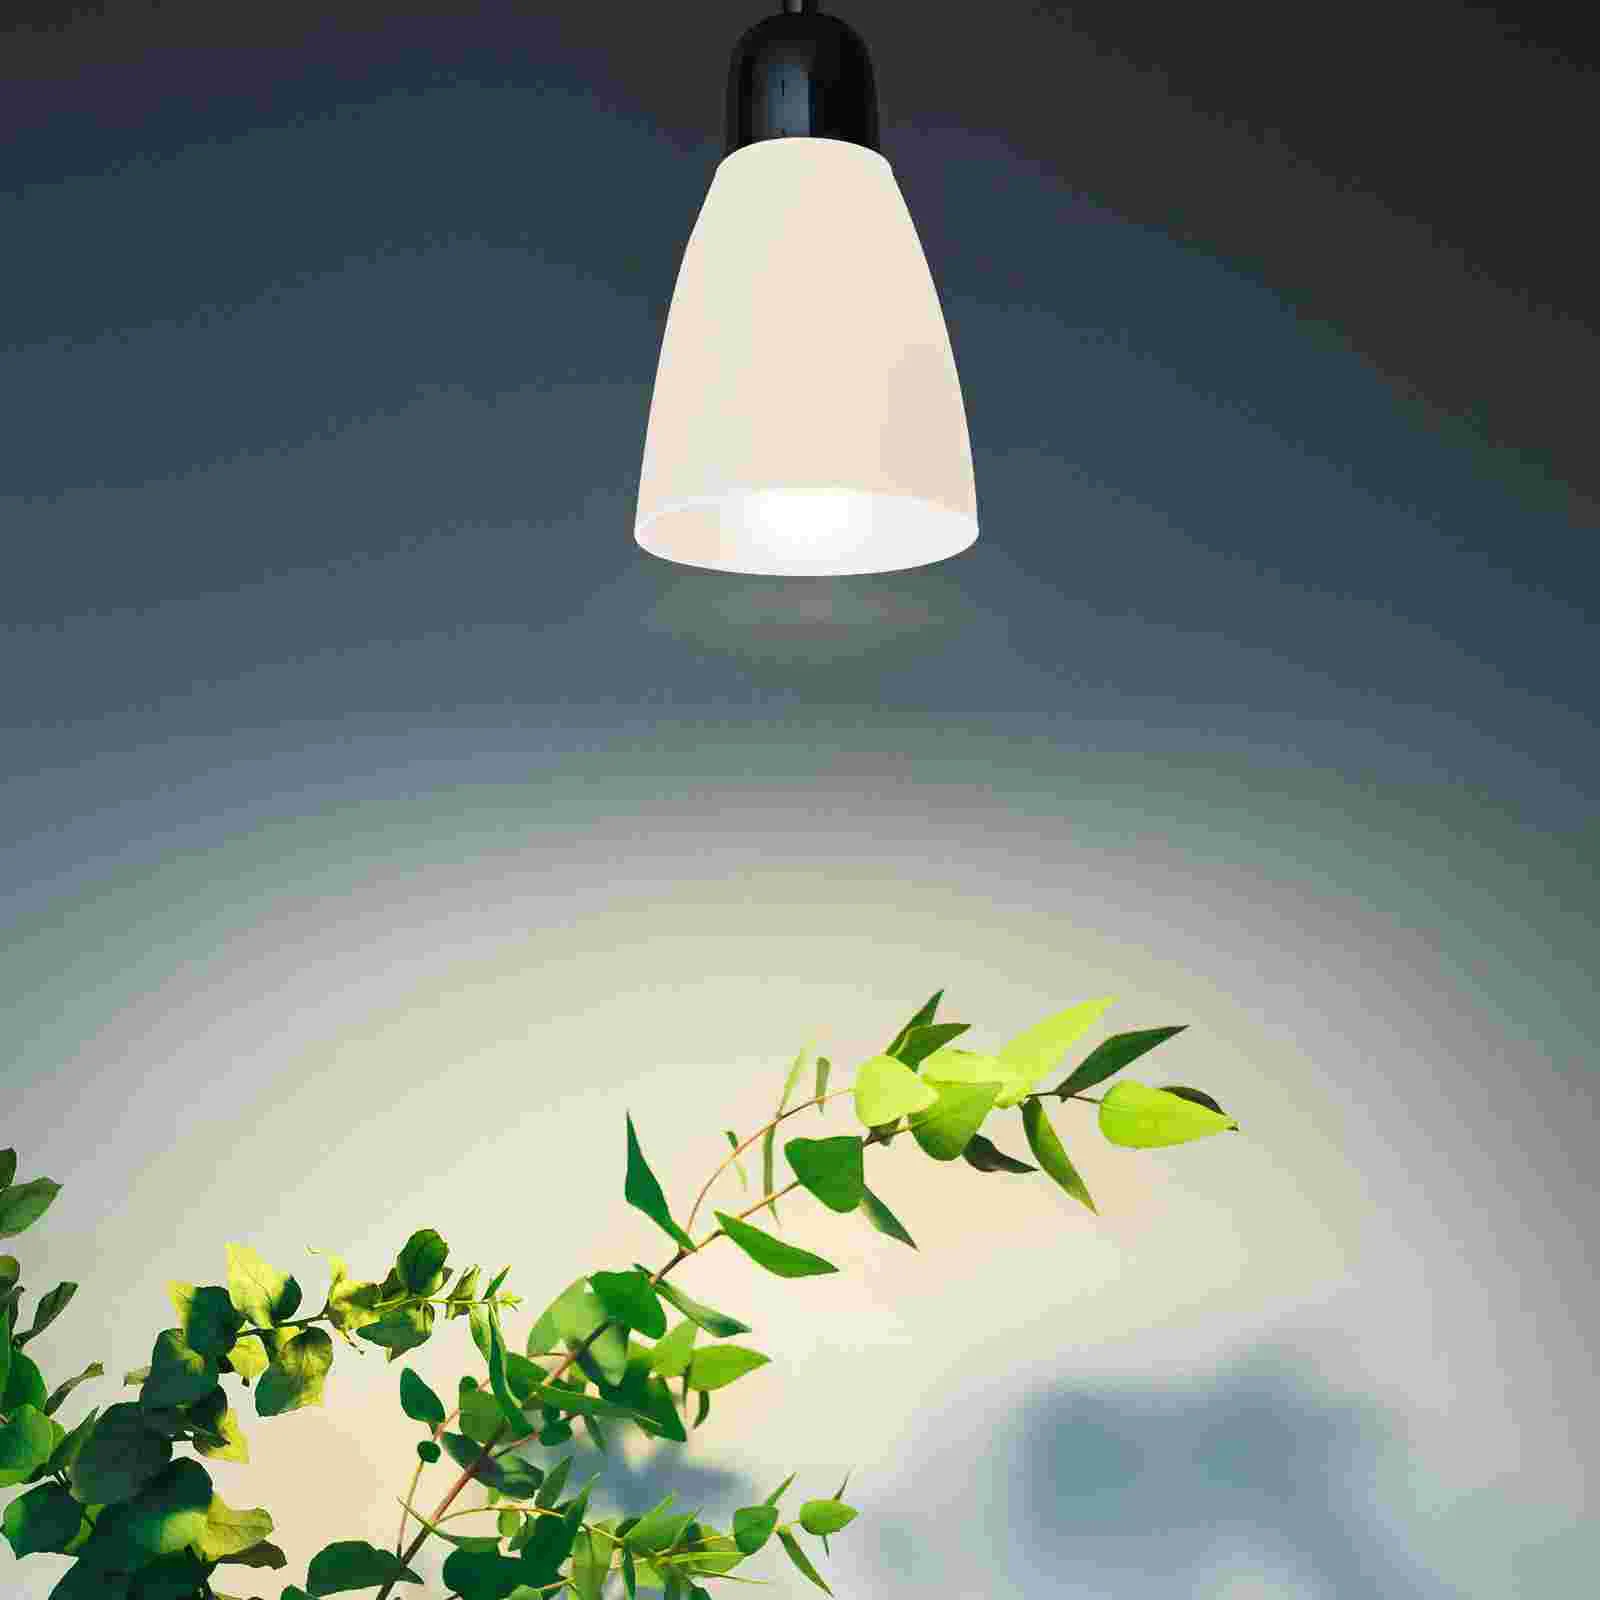 4 Peças De Plástico Abajur Luminárias De Mesa De Parede De Luz Do Agregado Familiar Tampa Decorativa Pequena Lisa Durável Forma De Cabeça De Casa Shell